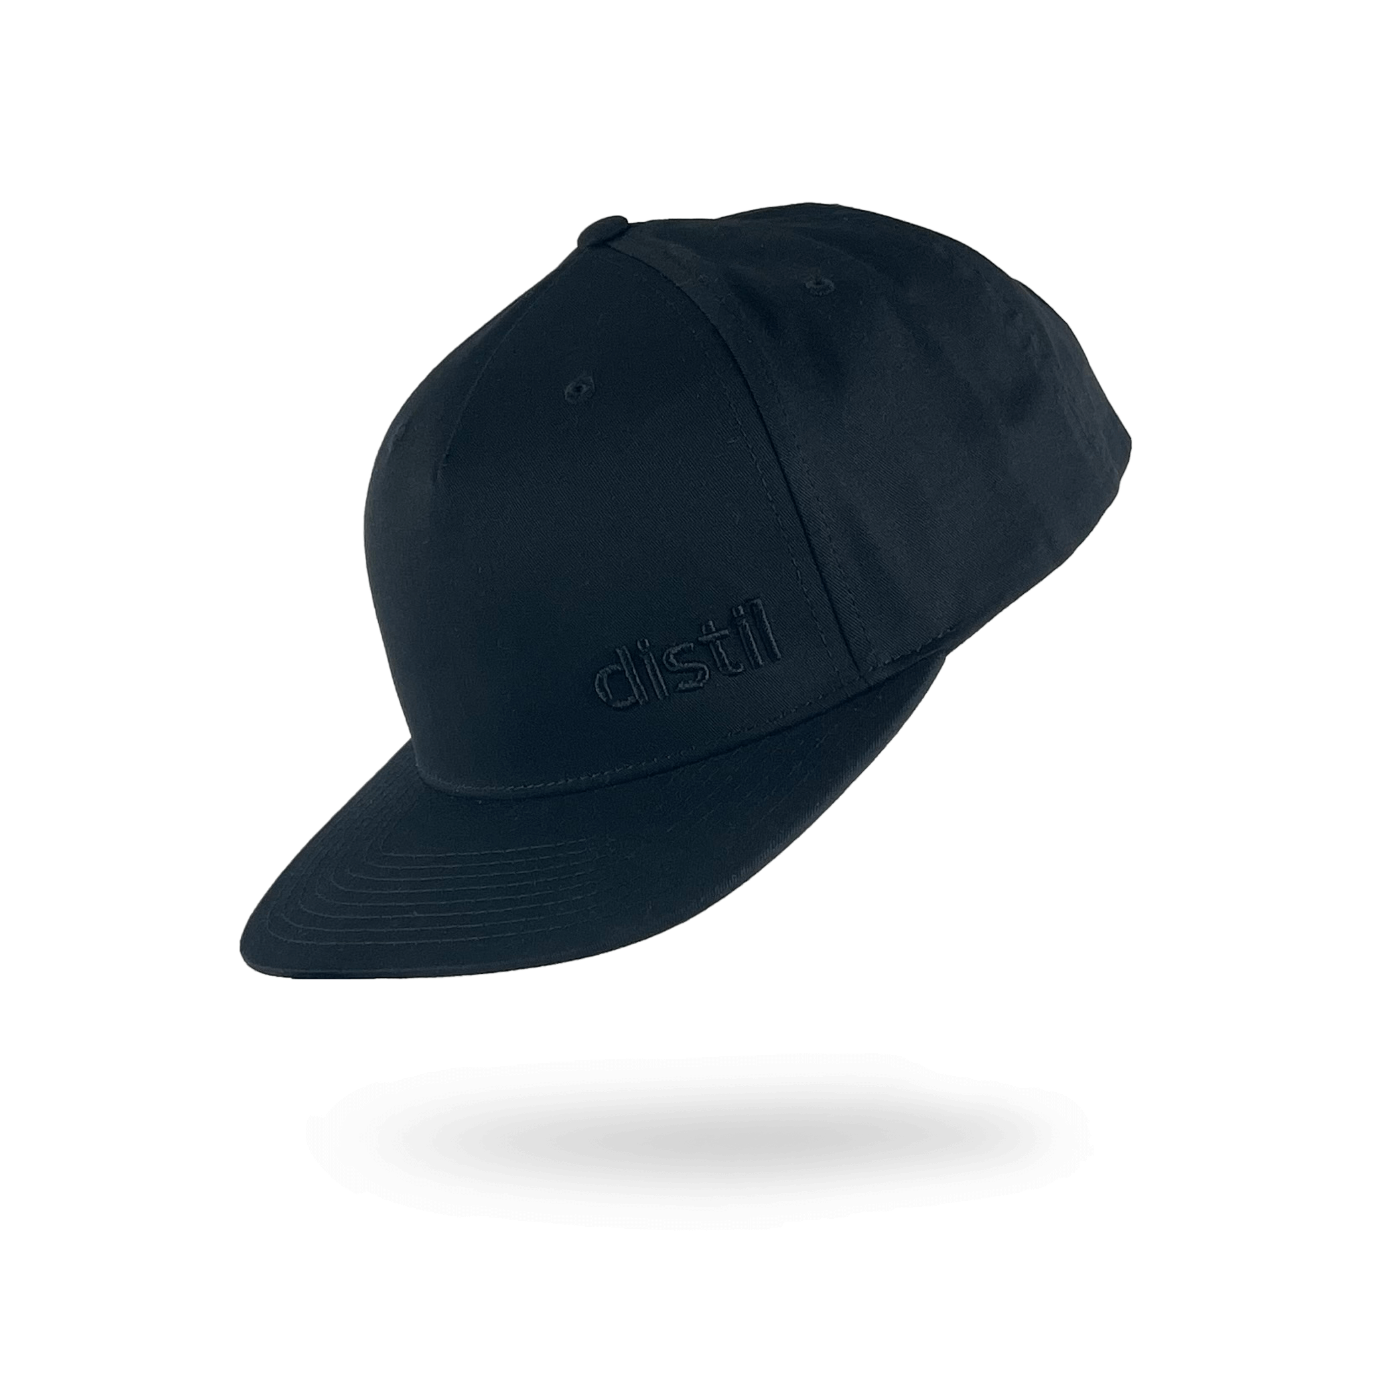 Distil embroidered hat in black